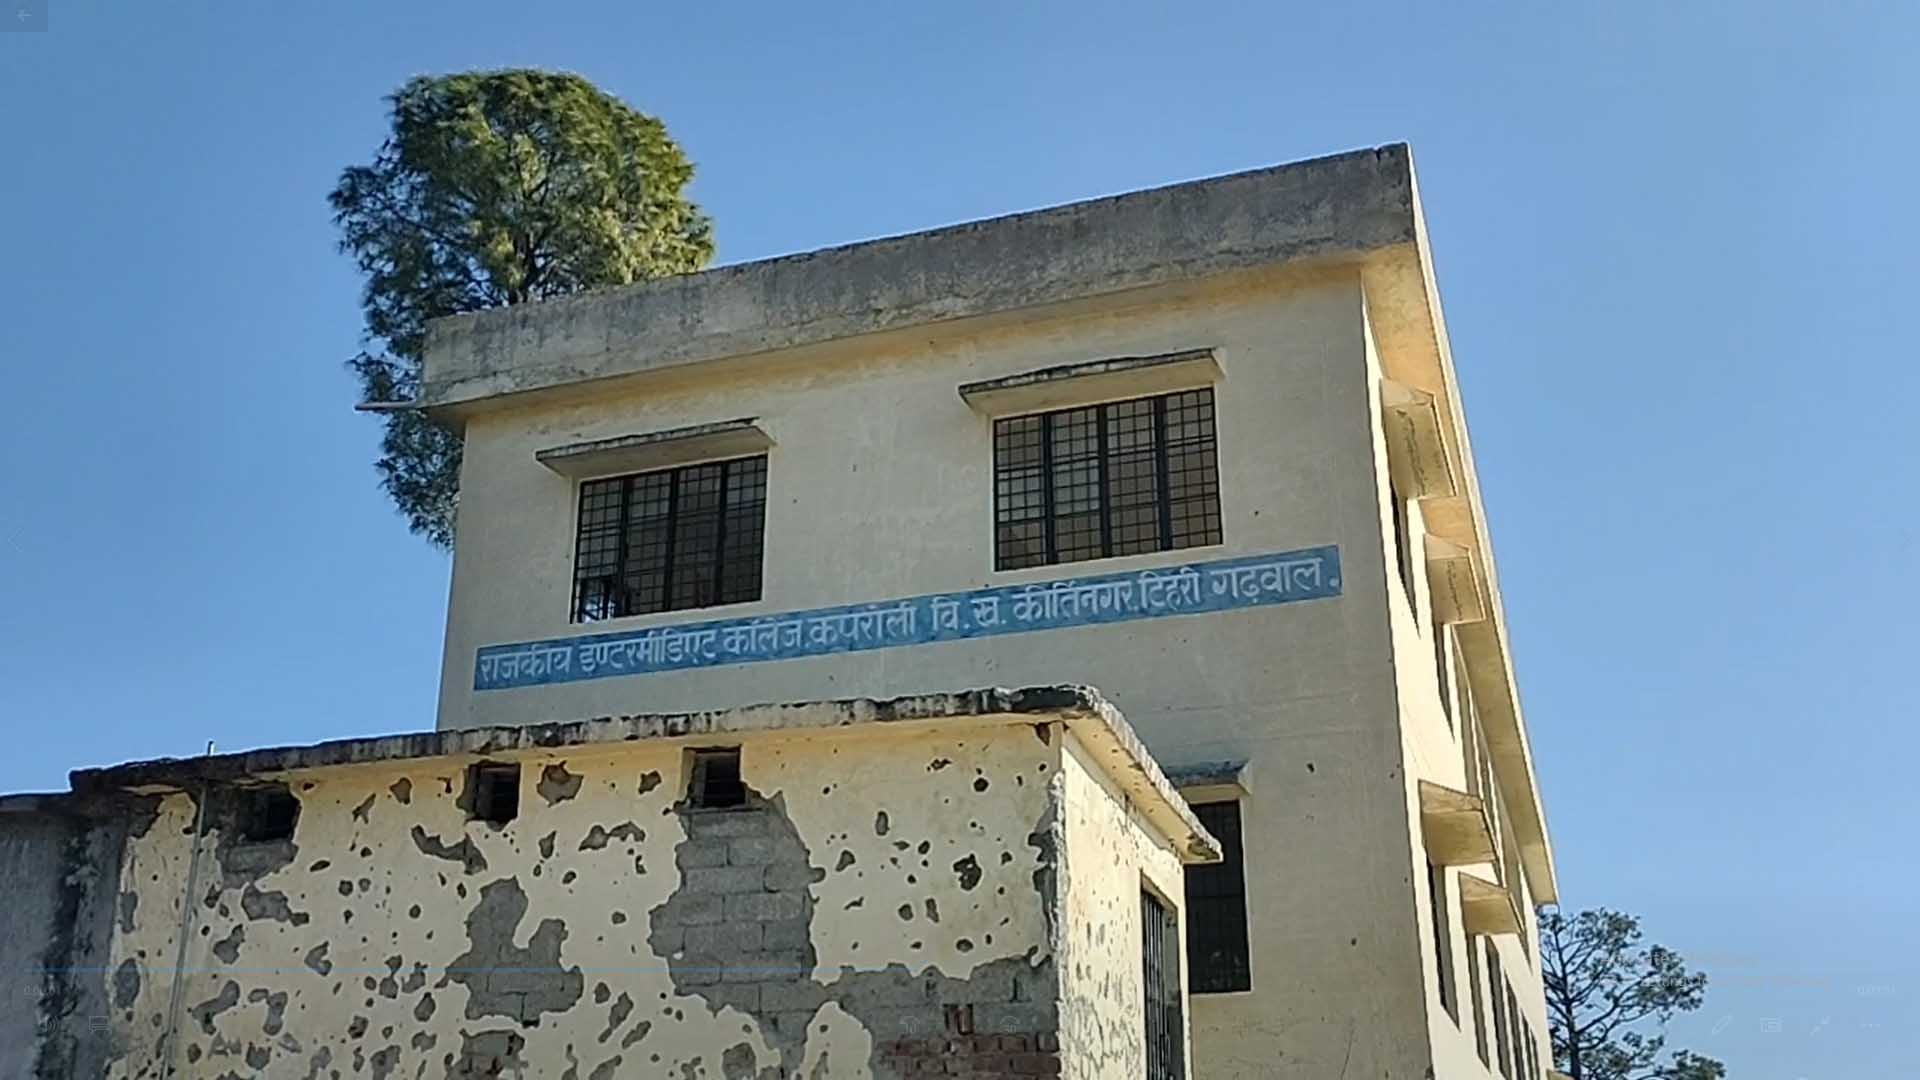 देवप्रयाग विधानसभा के प्राथमिक विद्यालय व इंटर काॅलेज कपरोली में पानी की समस्या, खुले में शौच करने को मजबूर छात्र